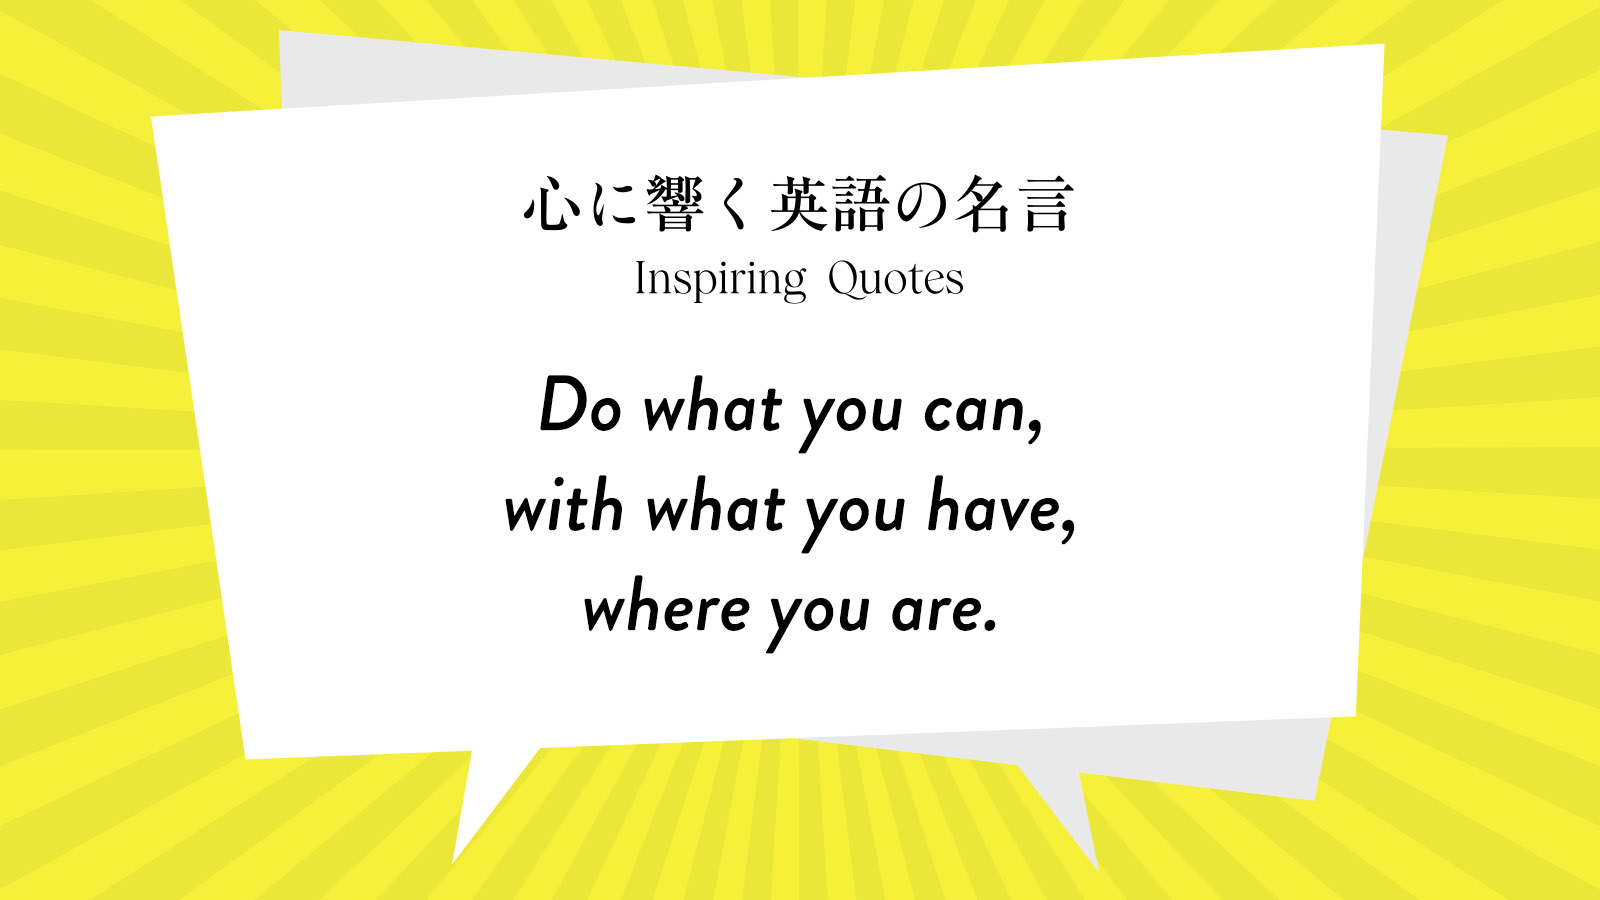 今週の名言 “Do what you can, with what you have, where you are.” | Inspiring Quotes: 心に響く英語の名言